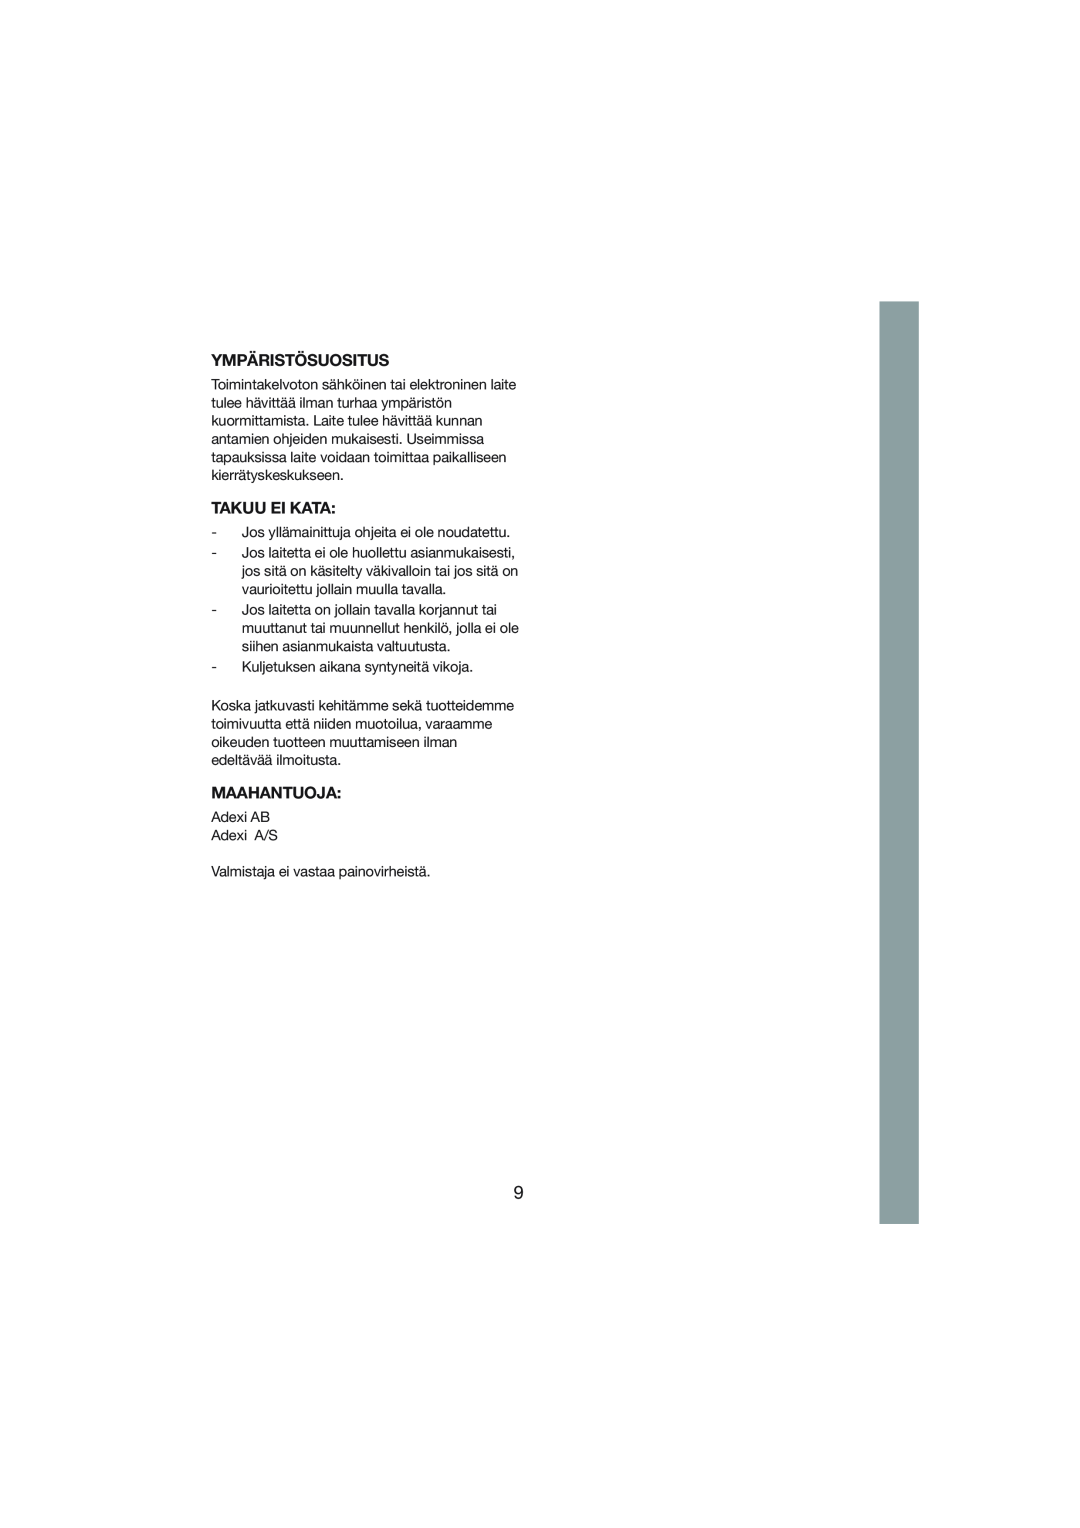 Melissa Black Series manual Ympäristösuositus, Takuu Ei Kata, Maahantuoja 